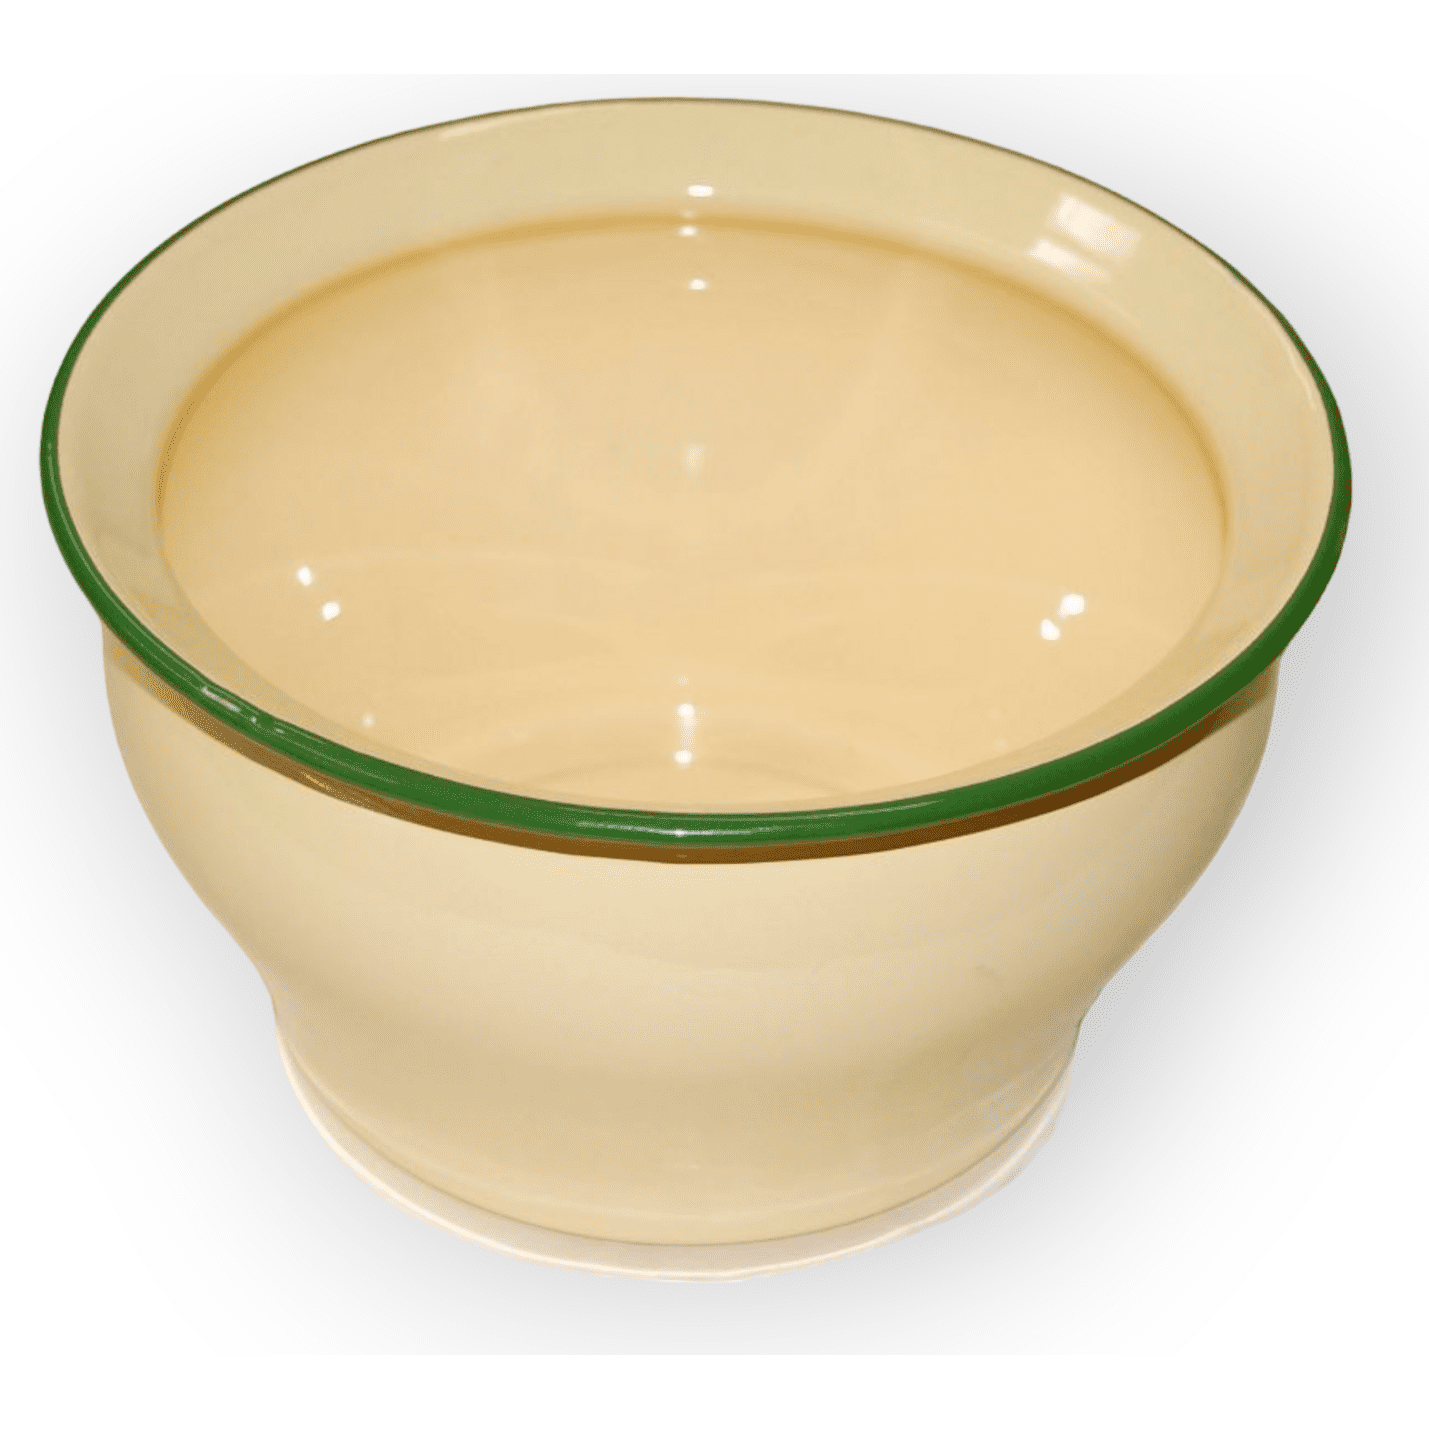 Ceramic on Metal Bowl Green 7" Diameter x 4" Tall